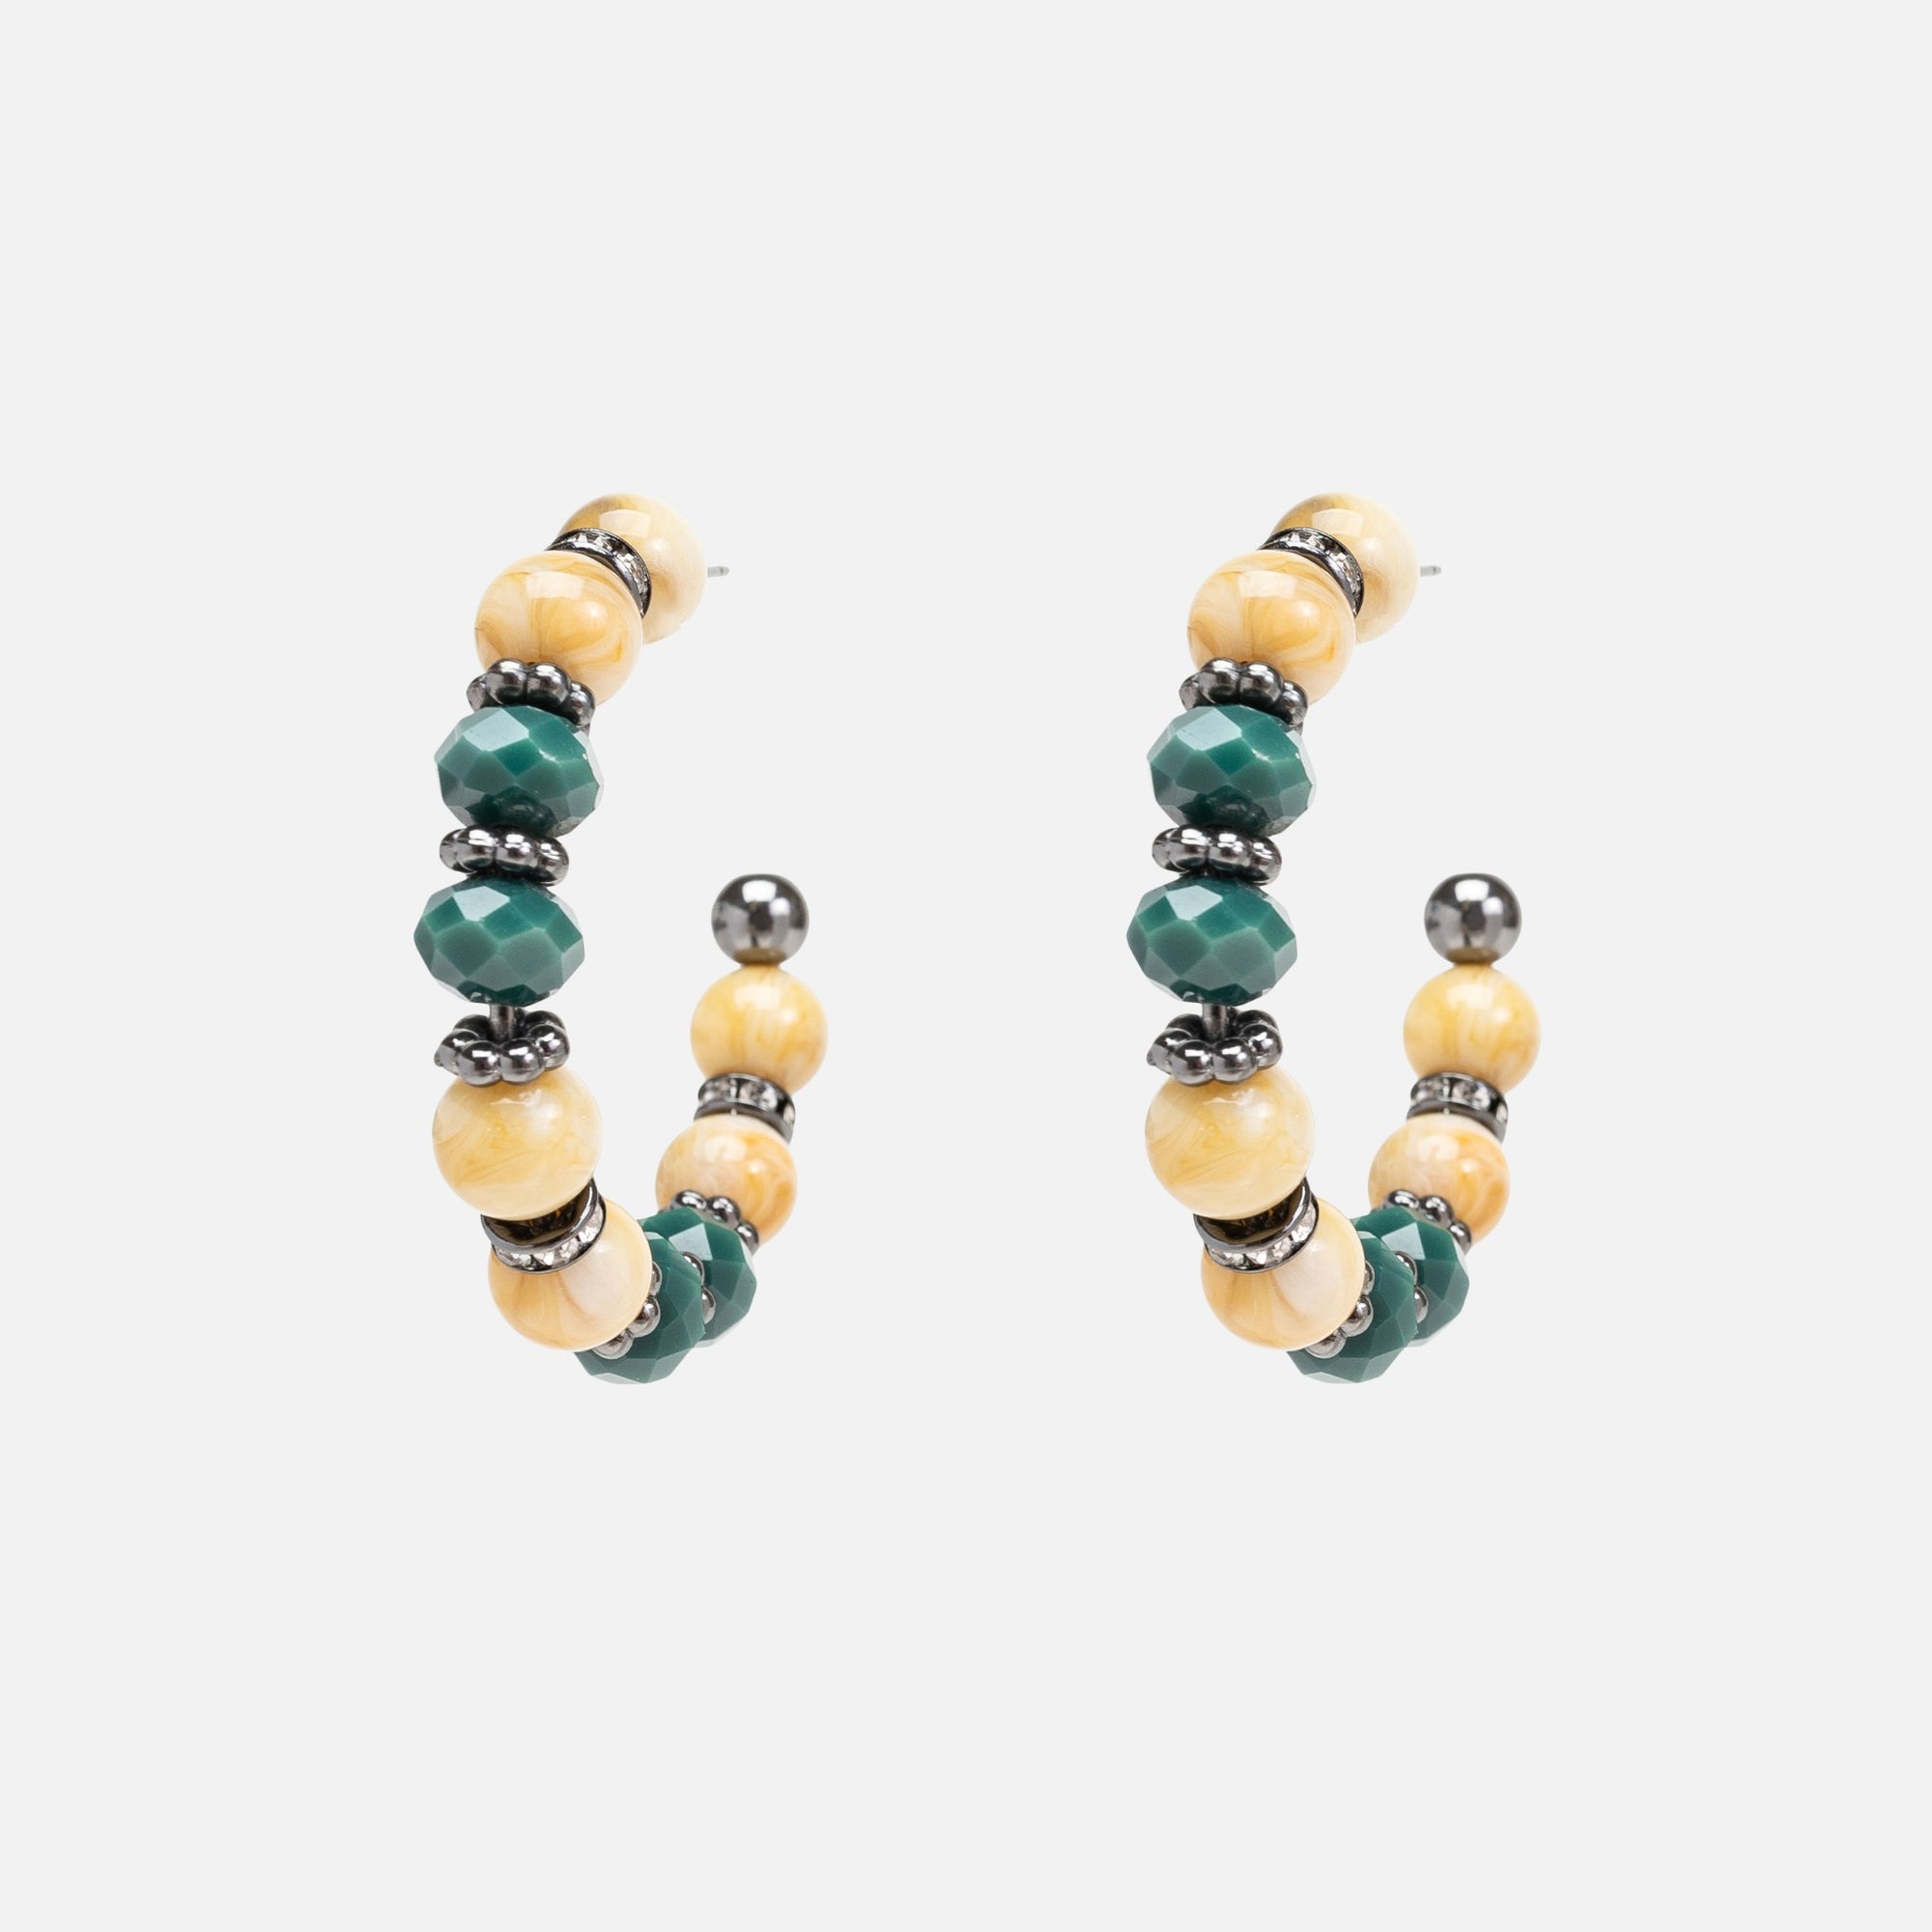 Boucles d'oreilles anneaux avec billes en bois et pierres vertes et grises